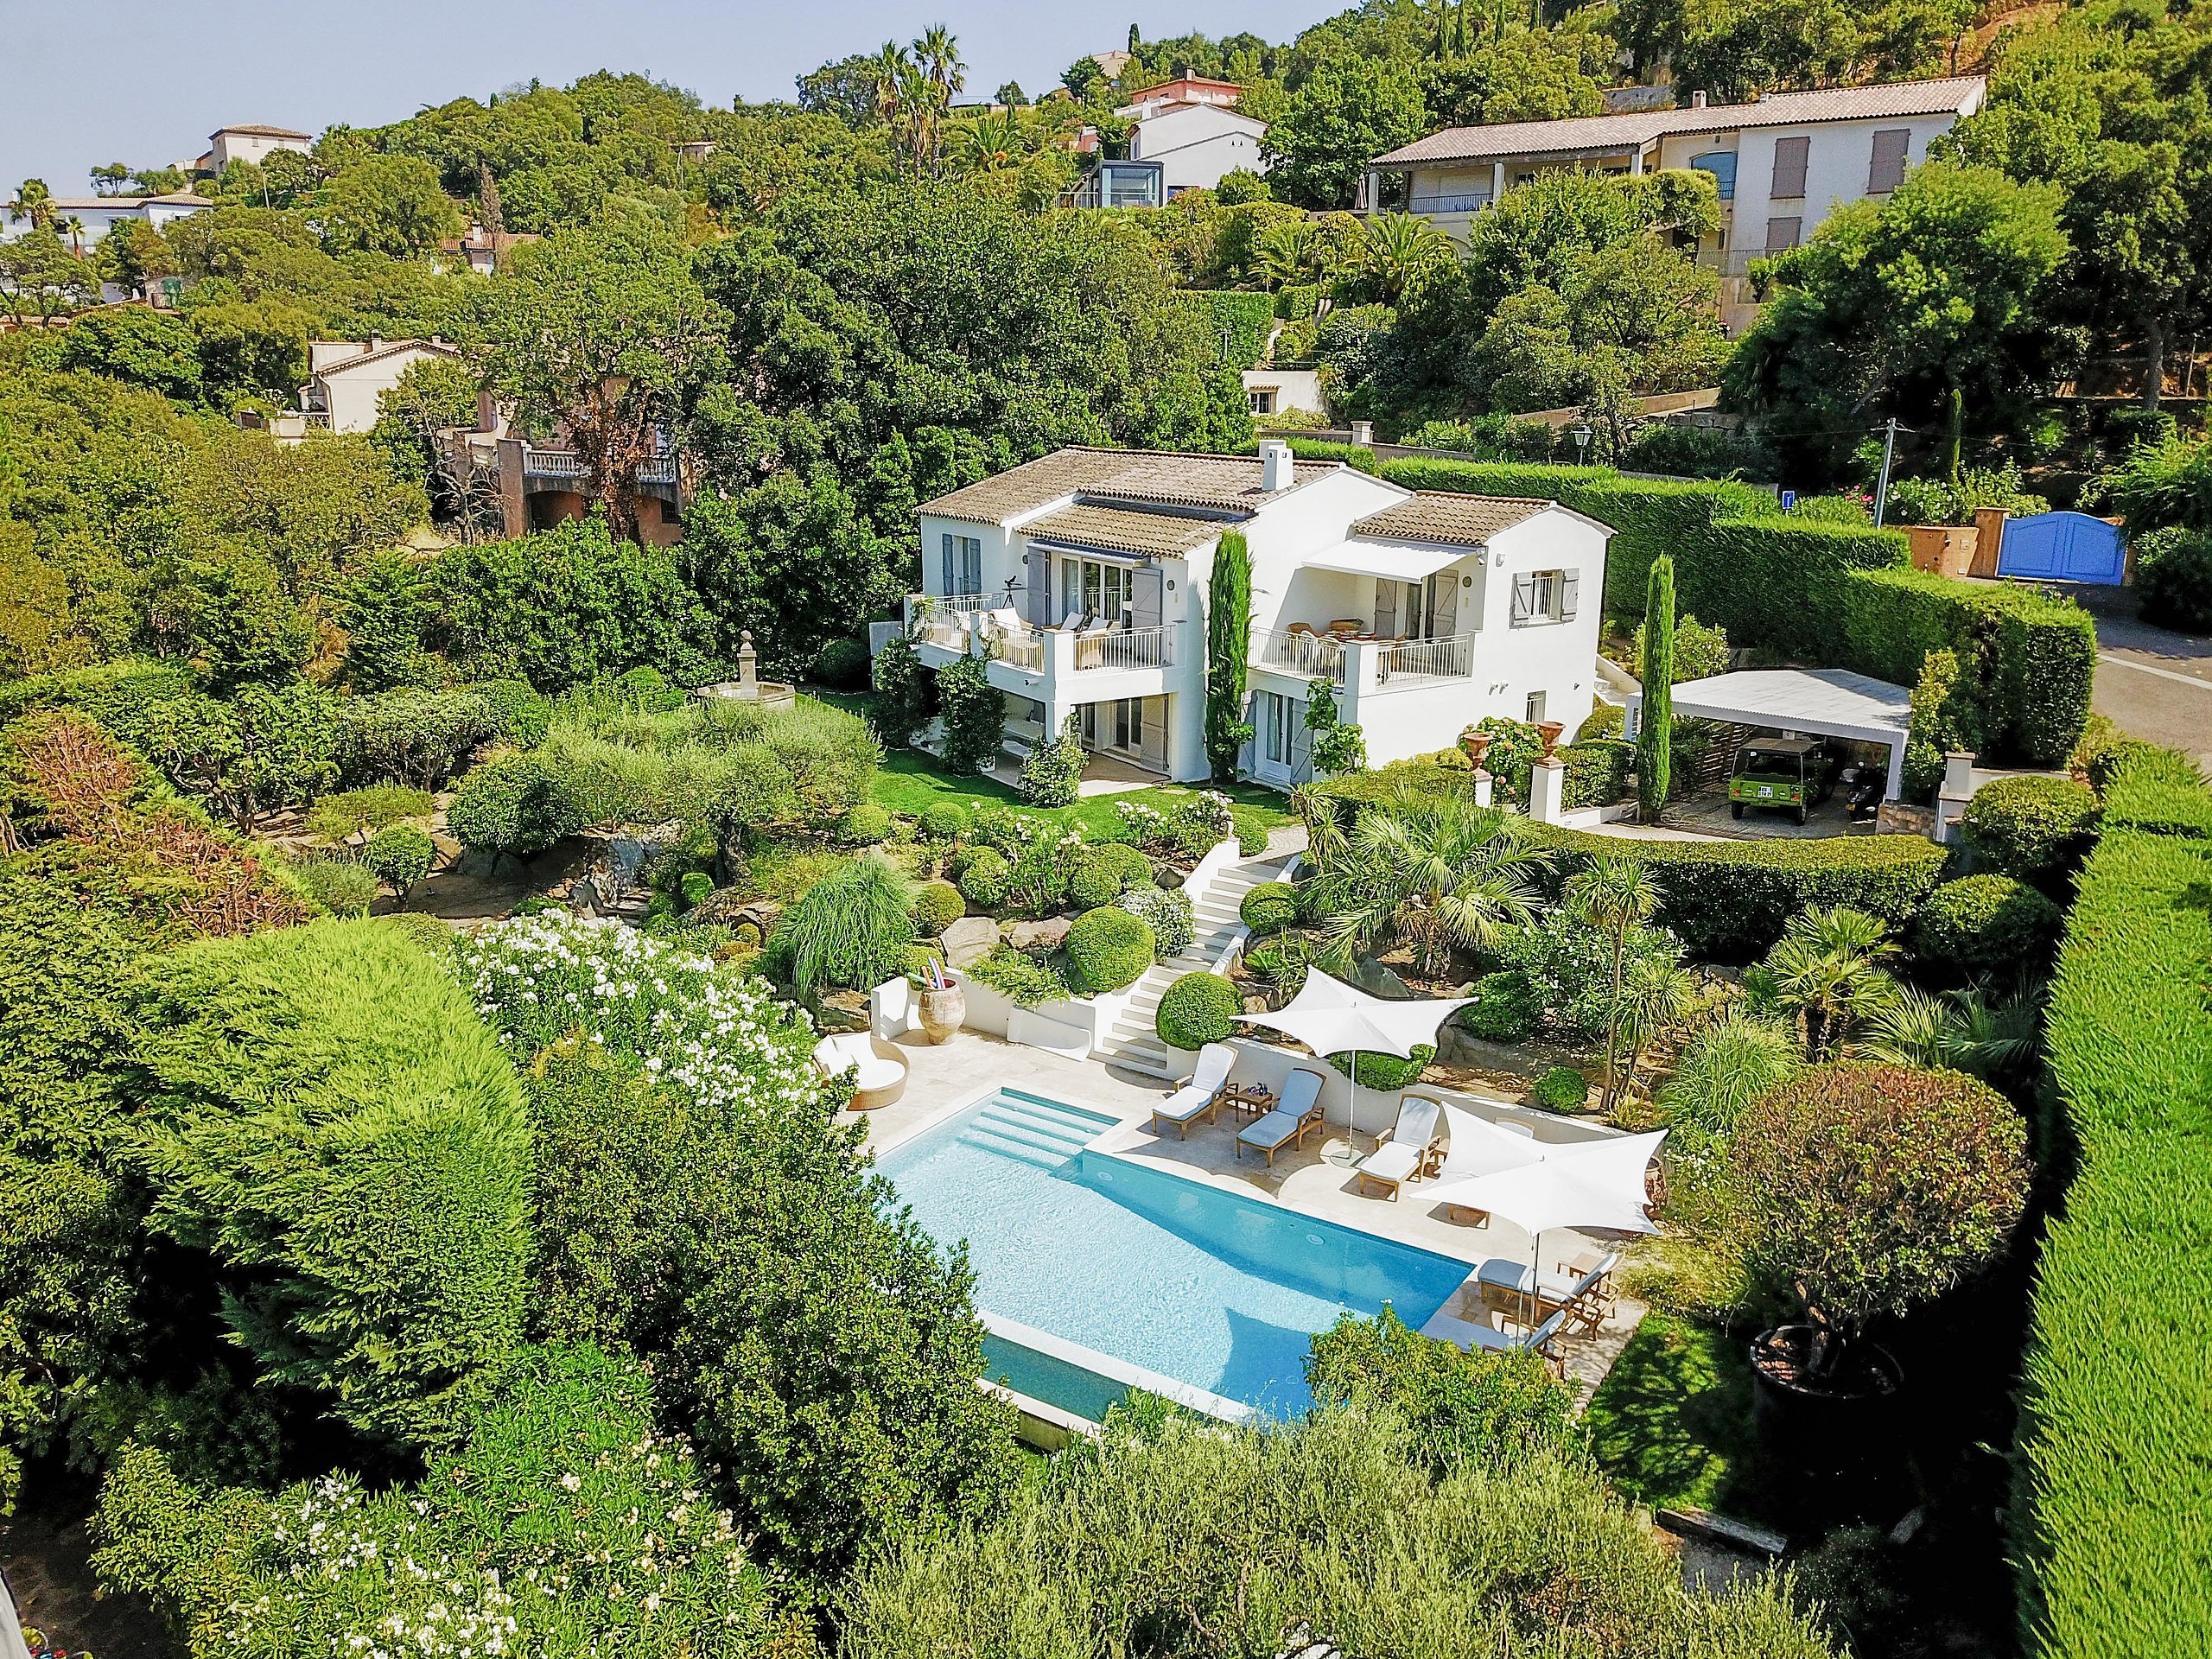 Althoff Belrose Villa Rental in St. Tropez Haute Vue Aussenansicht Pool und Fassade im Sommer